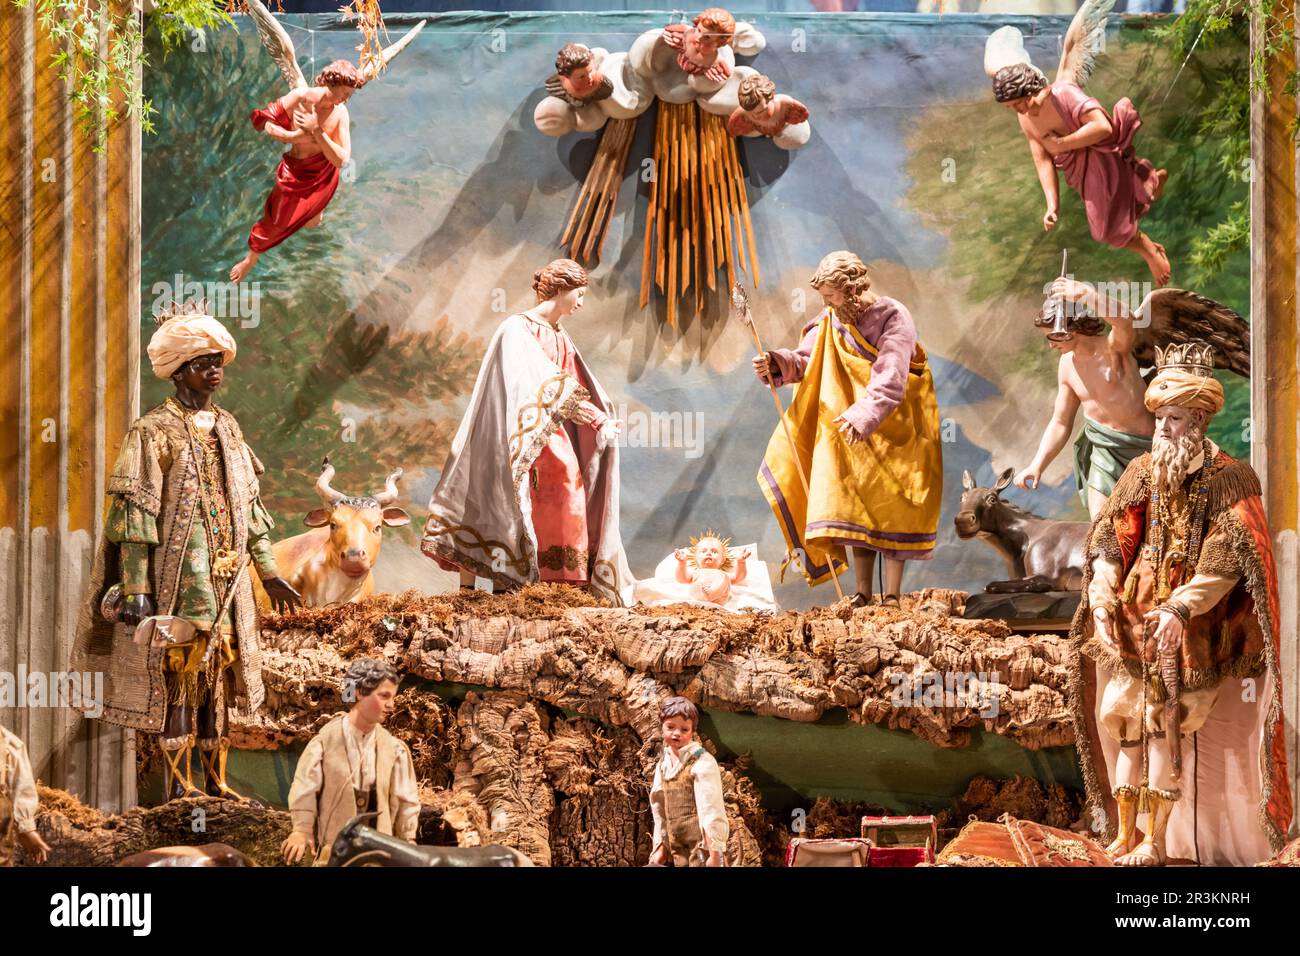 Berceau italien - nommé presepe - avec la nativité. Scène religieuse traditionnelle de Noël. Banque D'Images